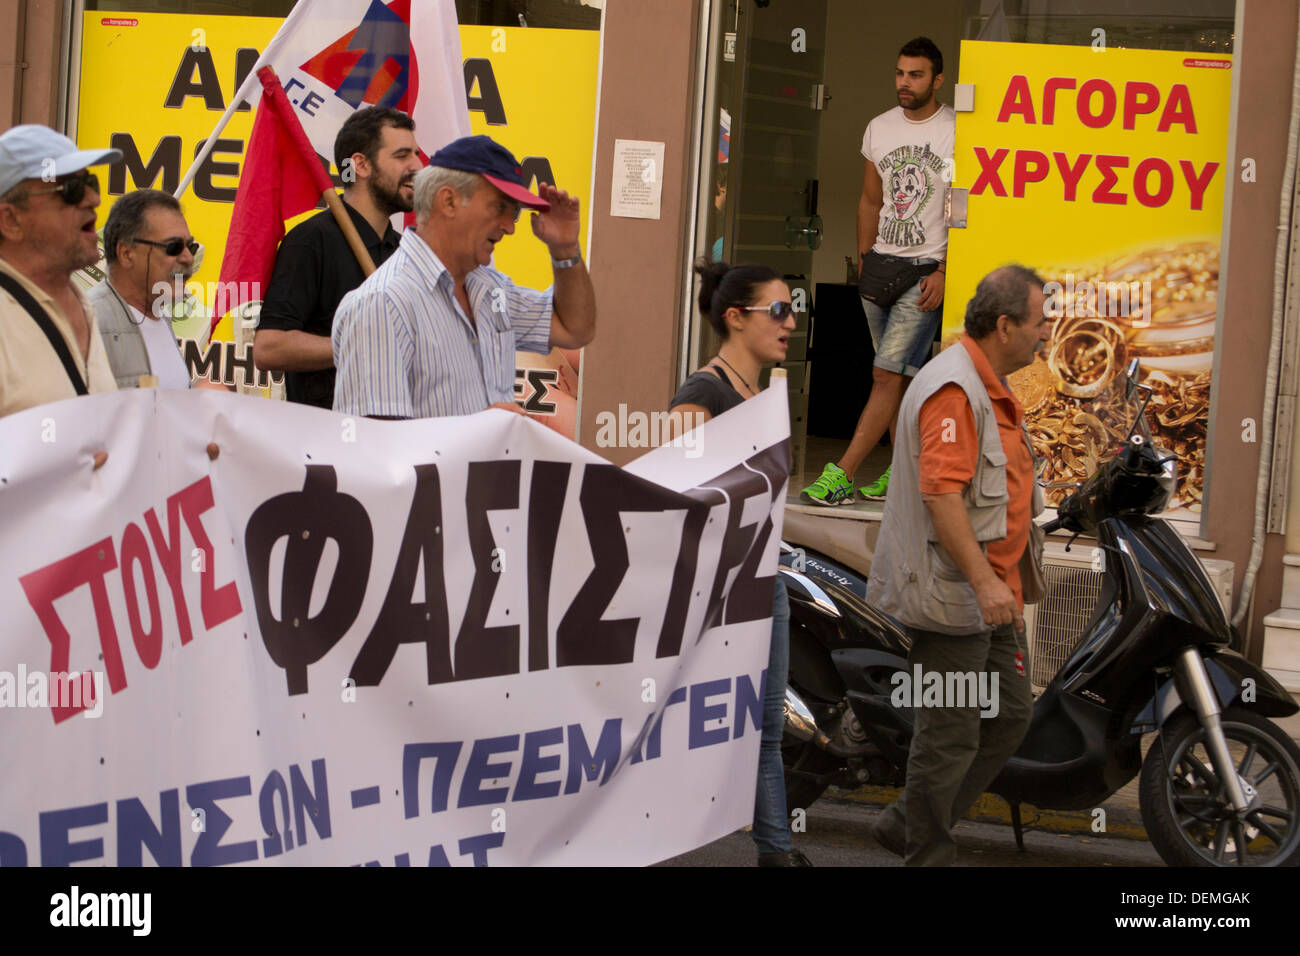 Nikaia, Atene, Grecia, 21 settembre 2013. In seguito Pavlos Fyssas accoltellato a morte da un membro della neo-nazi, Golden Dawn partito, elementi di raccordo e stadio leftists una dimostrazione di protesta contro i fascisti. L'anti-fascismo marzo passa da un negozio di pegni. Credito: Nikolas Georgiou / Alamy Live News Foto Stock